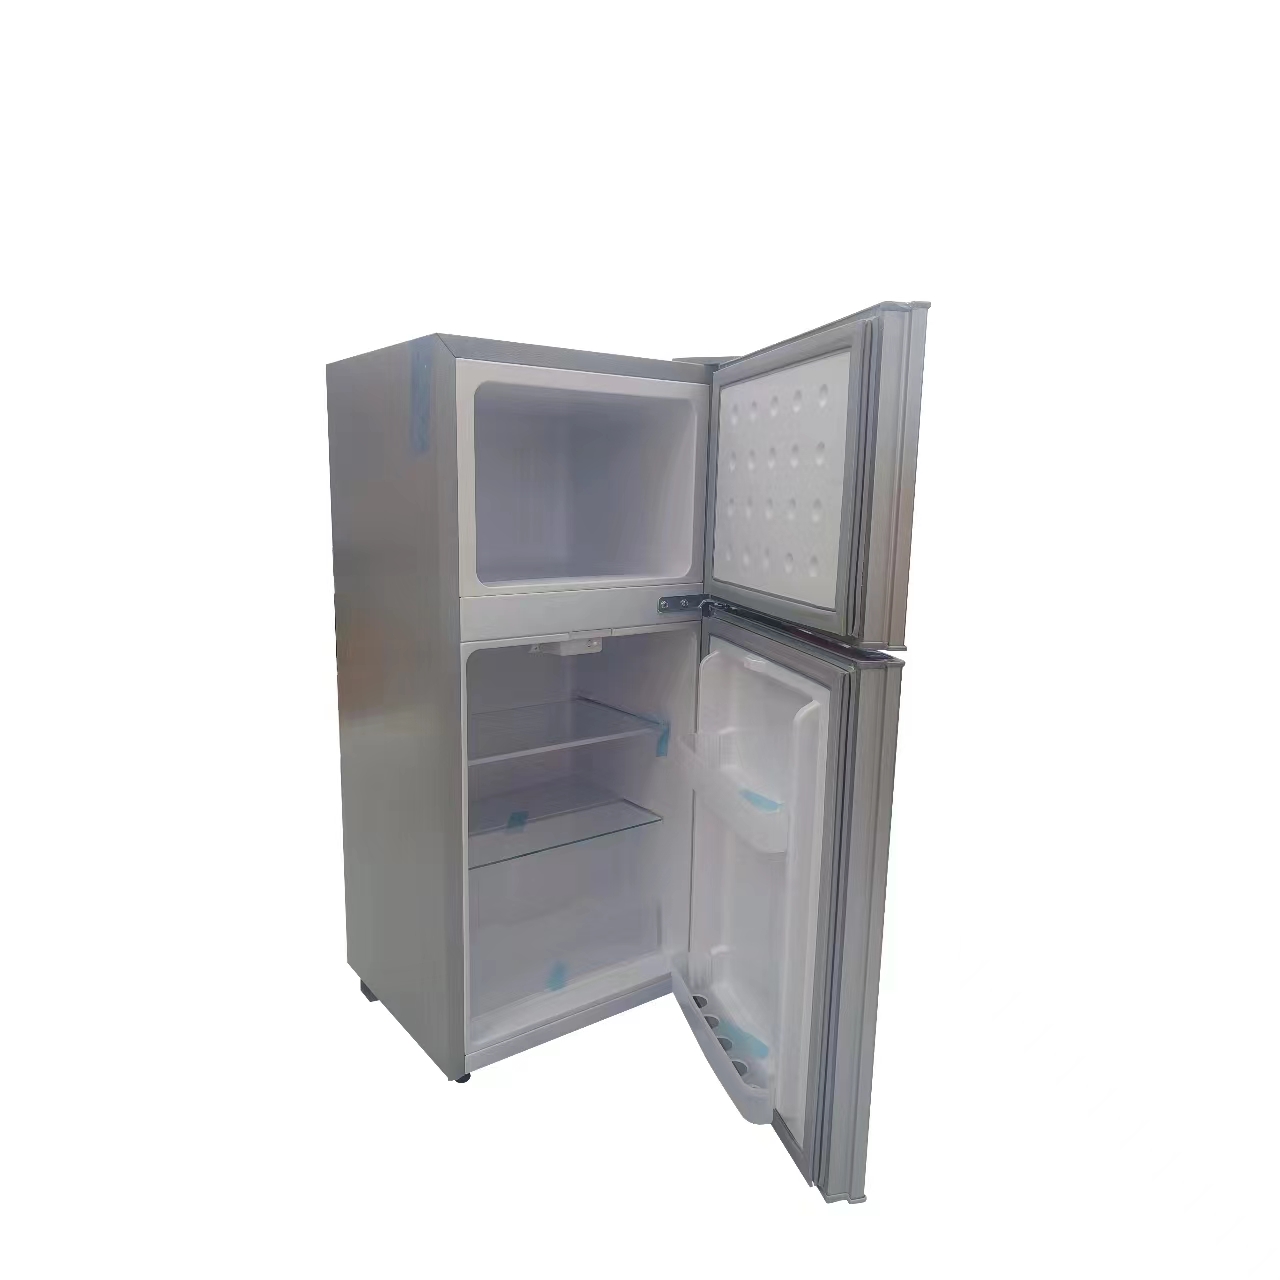 冰箱科技/节能冷藏/太阳能冰箱产品图